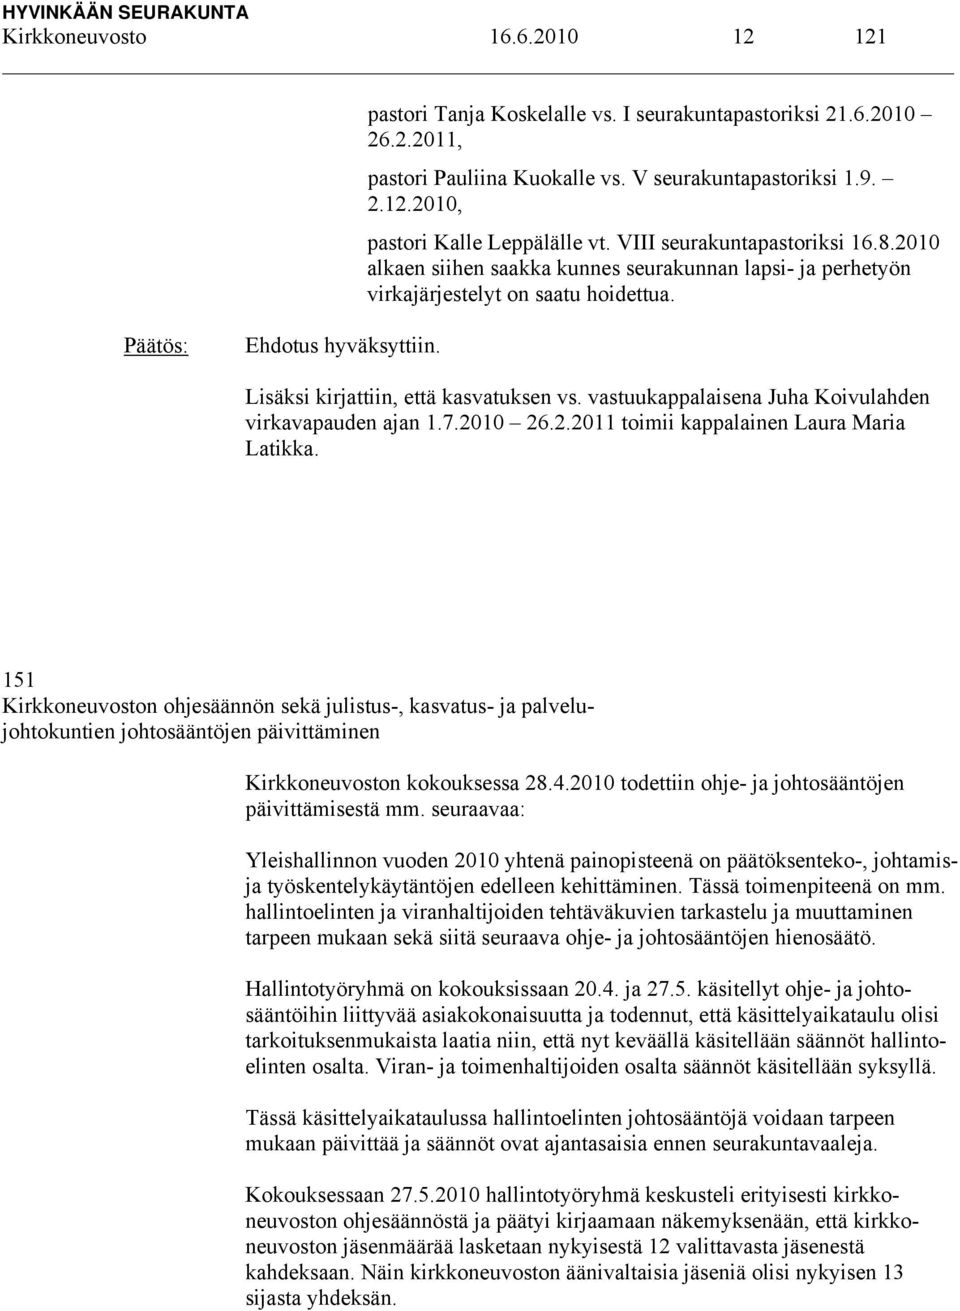 vastuukappalaisena Juha Koivulahden virkavapauden ajan 1.7.2010 26.2.2011 toimii kappalainen Laura Maria Latikka.